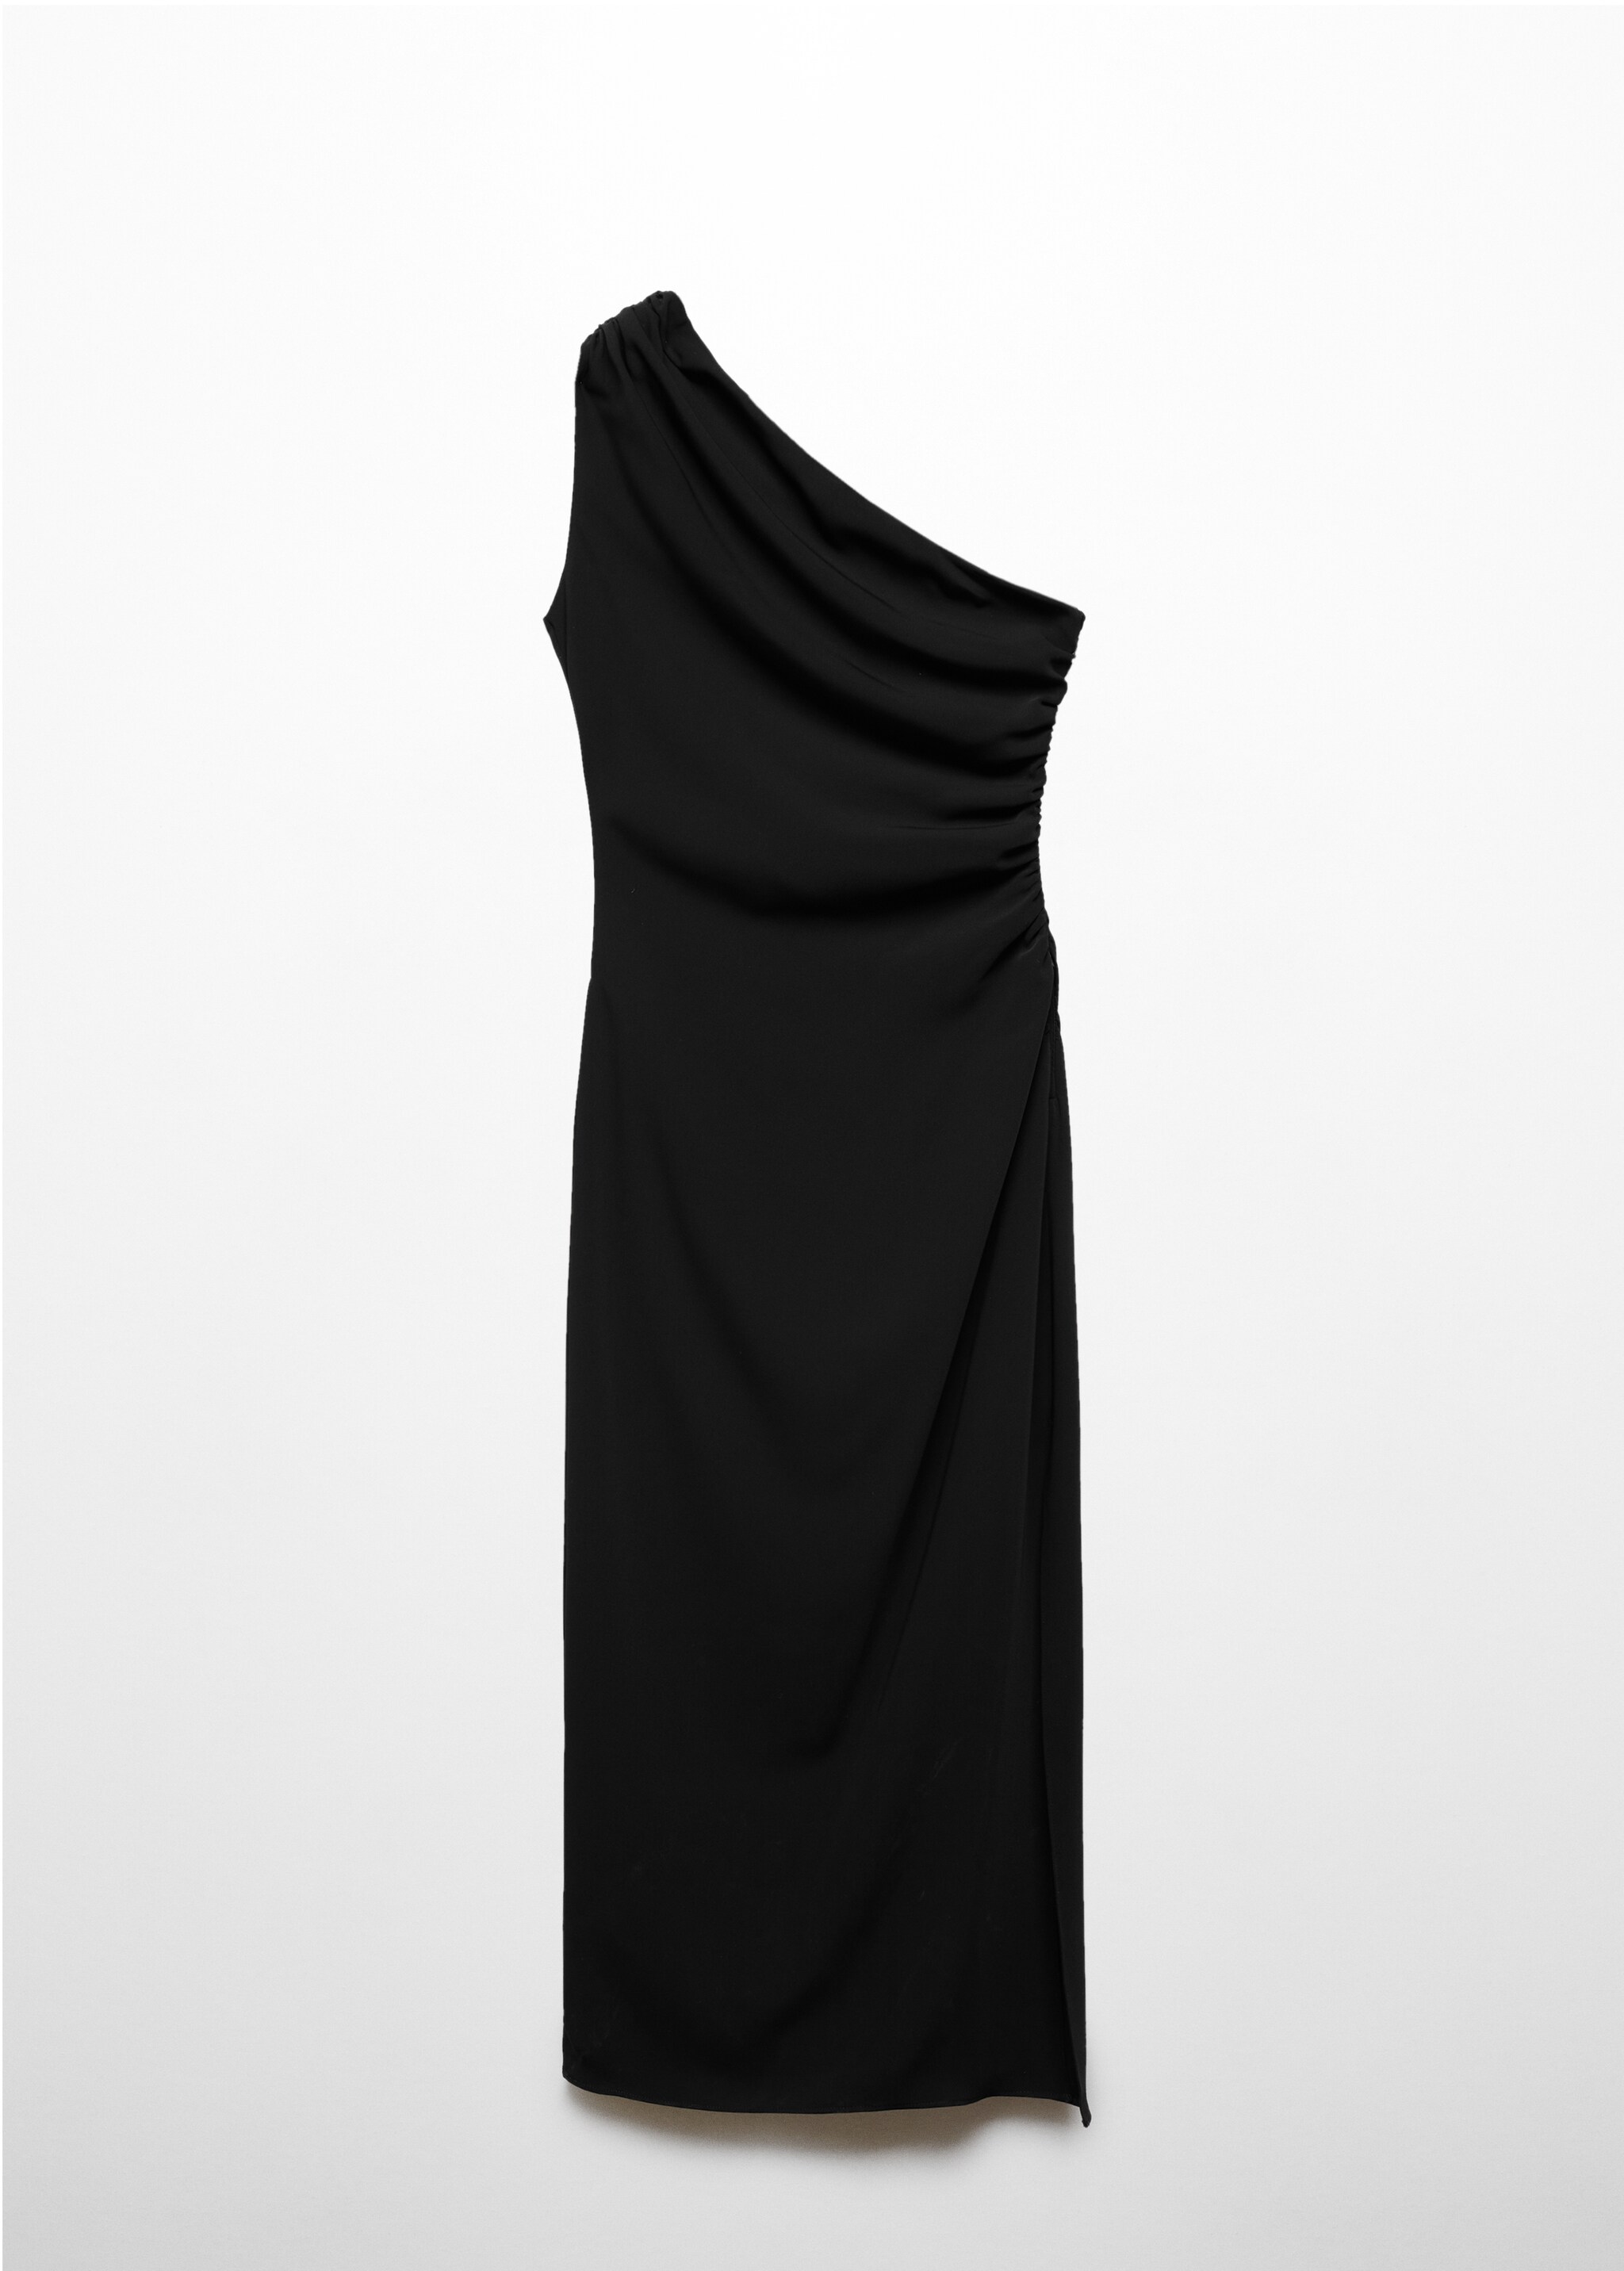 Φόρεμα ασύμμετρο σκίσιμο στο πλάι - Προϊόν χωρίς μοντέλο